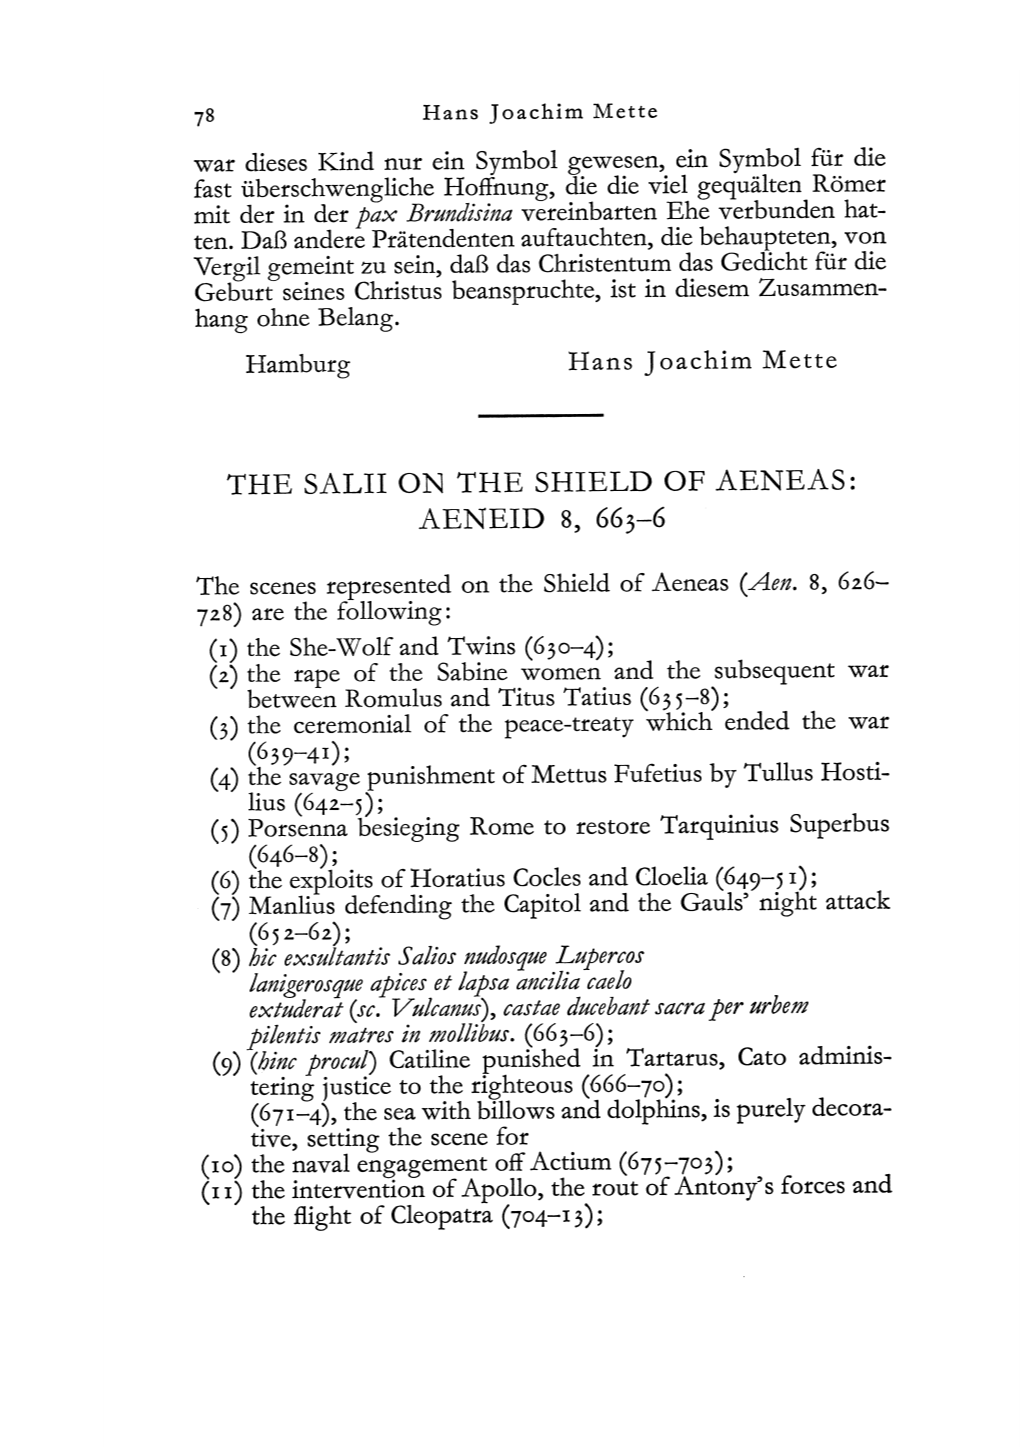 The Salii on the Shield of Aeneas: Aeneid 8, 663-6